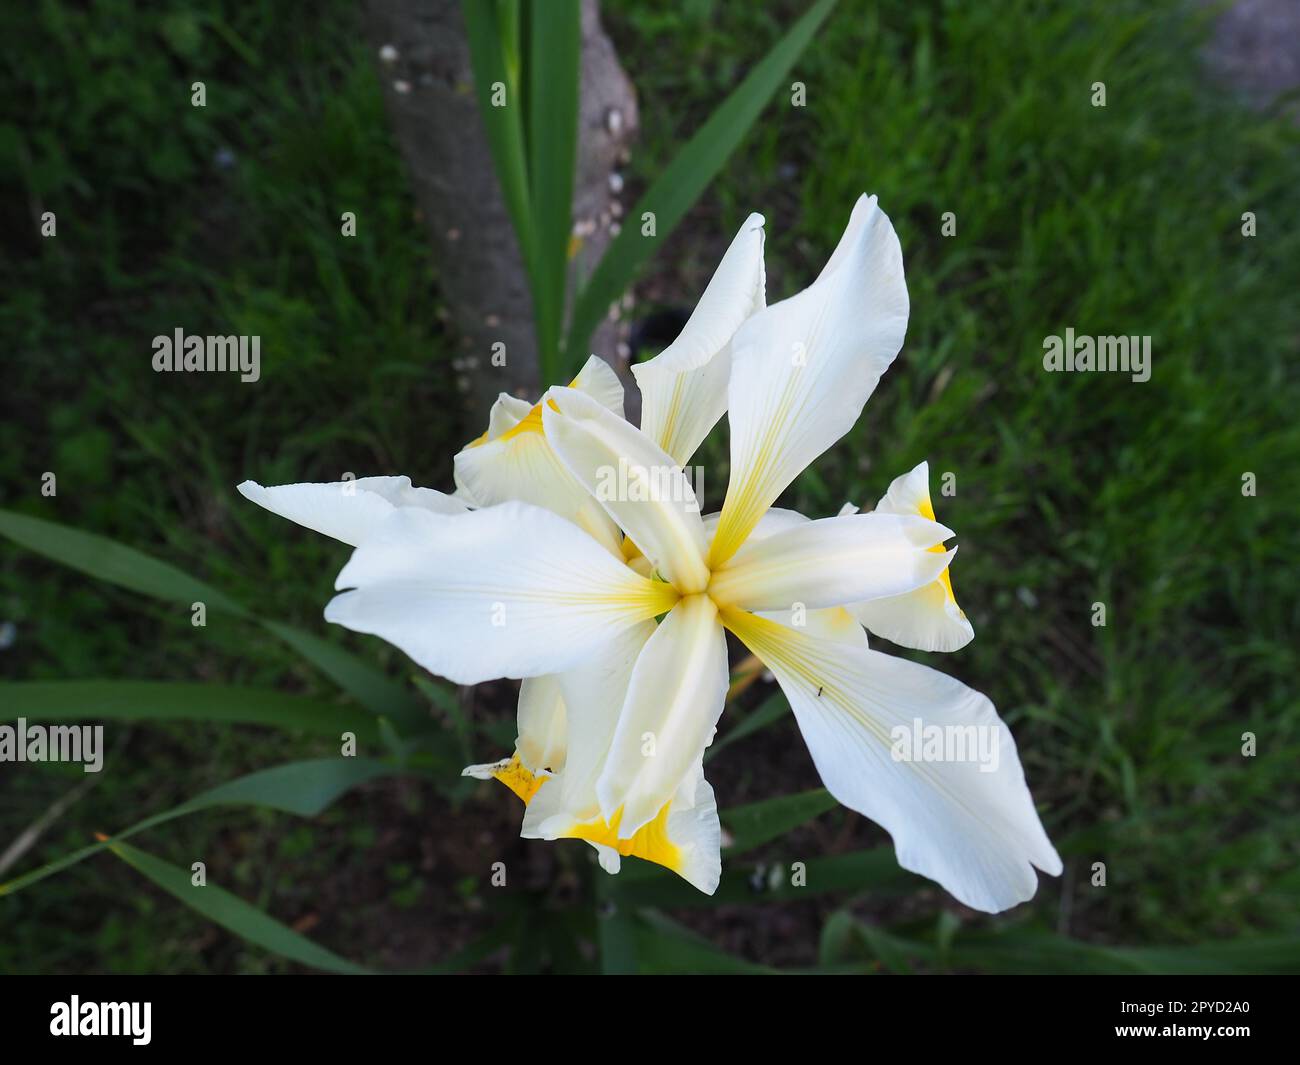 Iris est un genre de rhizomes vivaces de la famille des Iris. Une herbe ornementale avec de grandes fleurs lumineuses. Fleur délicate gracieuse de couleur blanche avec des veines jaunes. Feuilles vertes en arrière-plan Banque D'Images